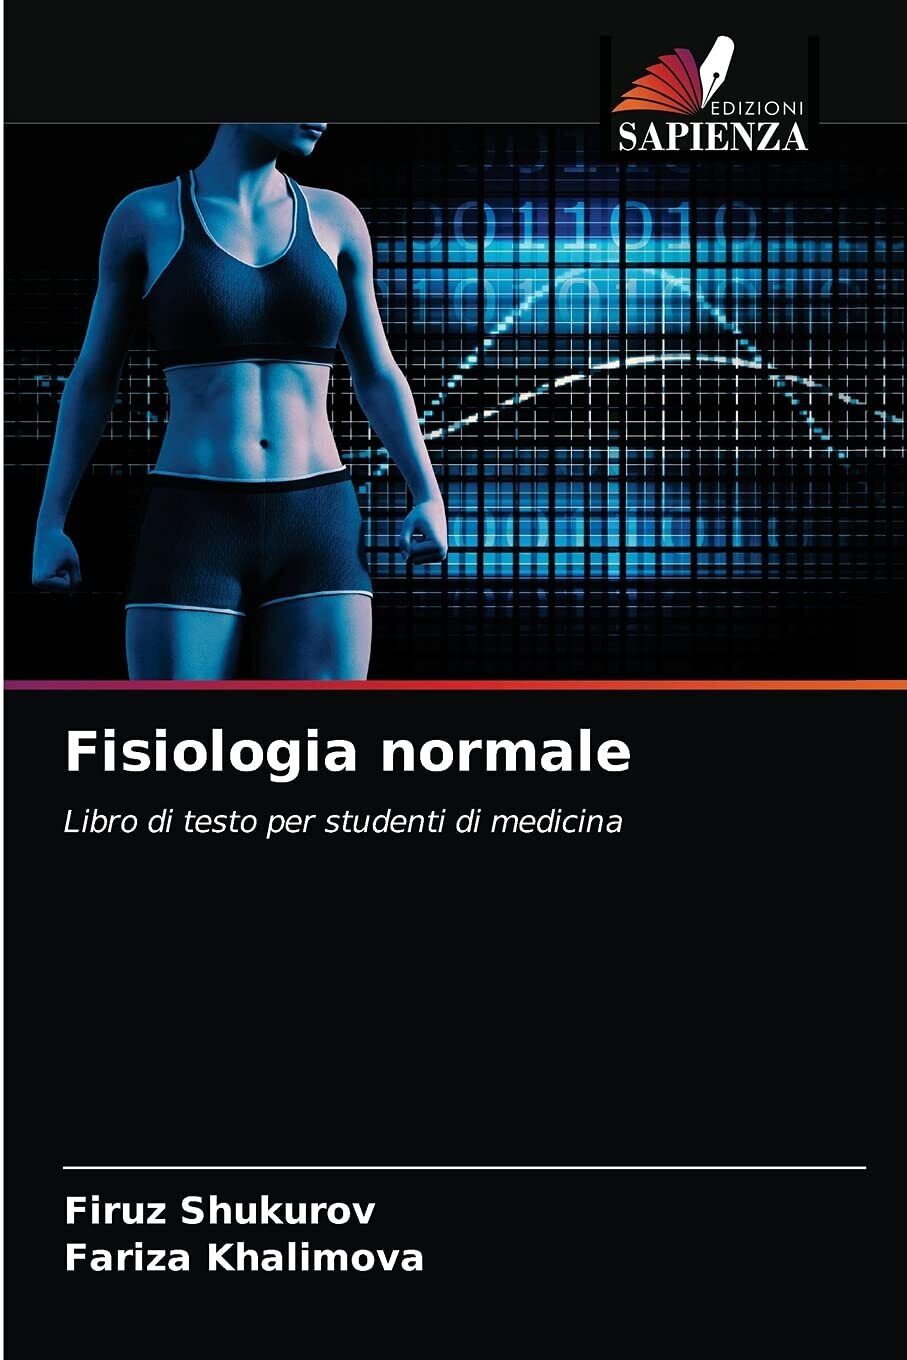 Fisiologia normale - Edizione Sapienza, 2021